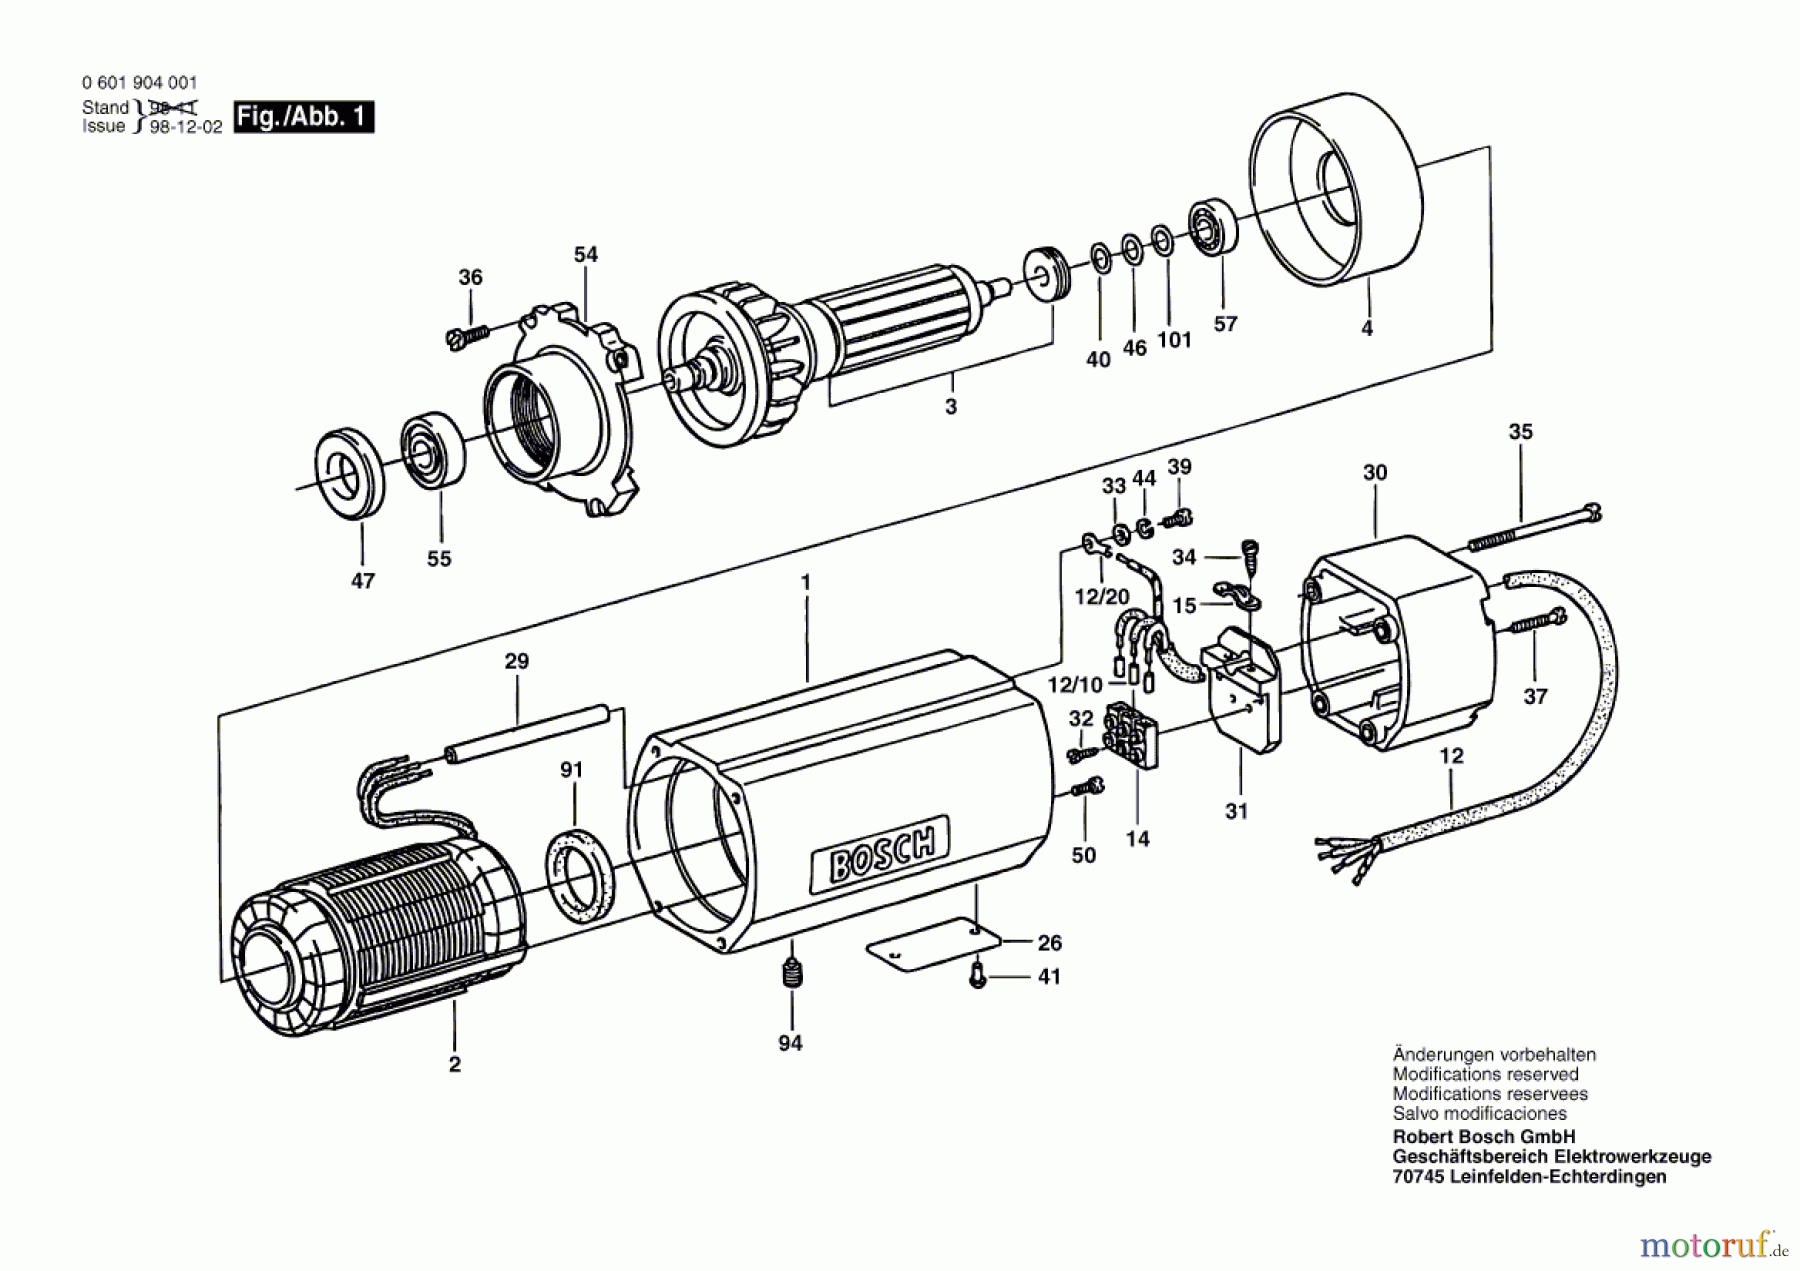  Bosch Werkzeug Hf-Anbaumotor GR./SIZE 77 Seite 1